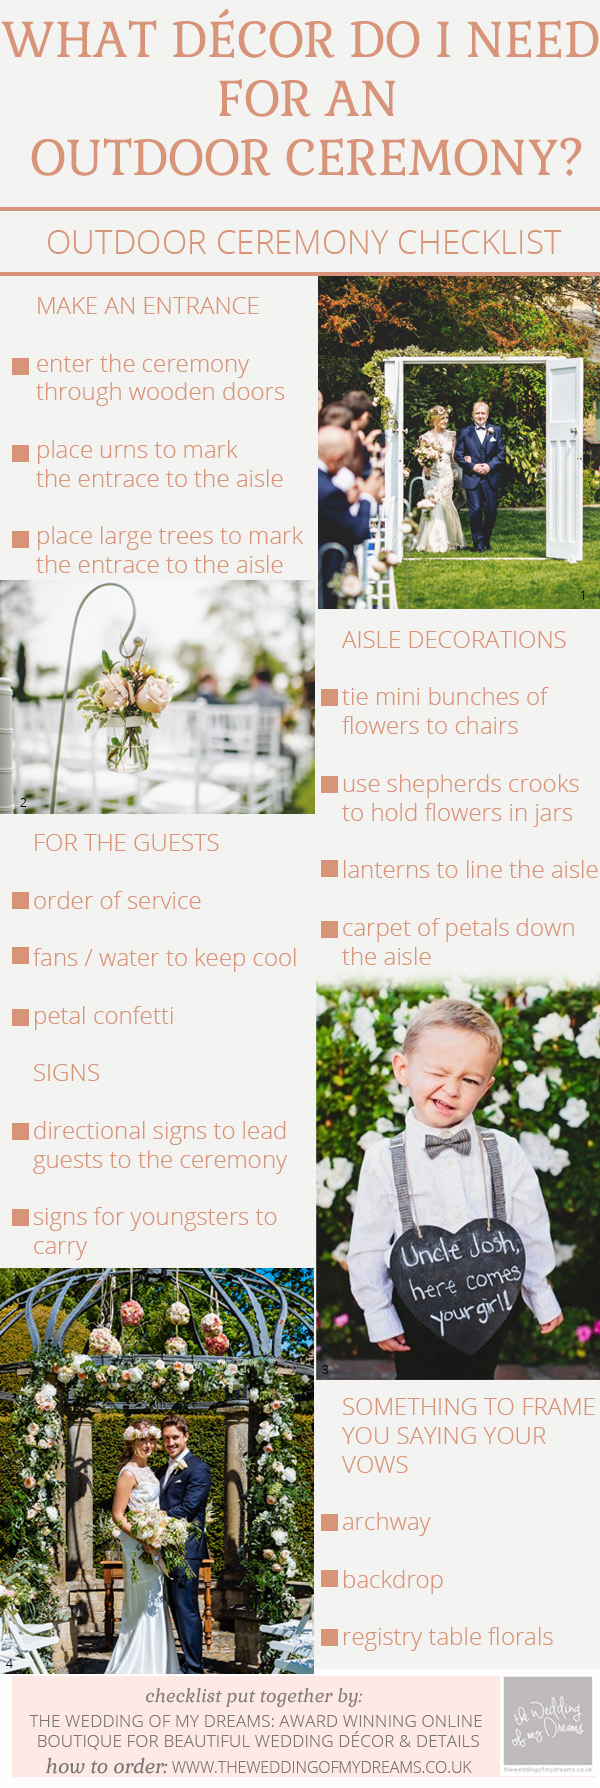 outdoor wedding ceremony decorations checklist